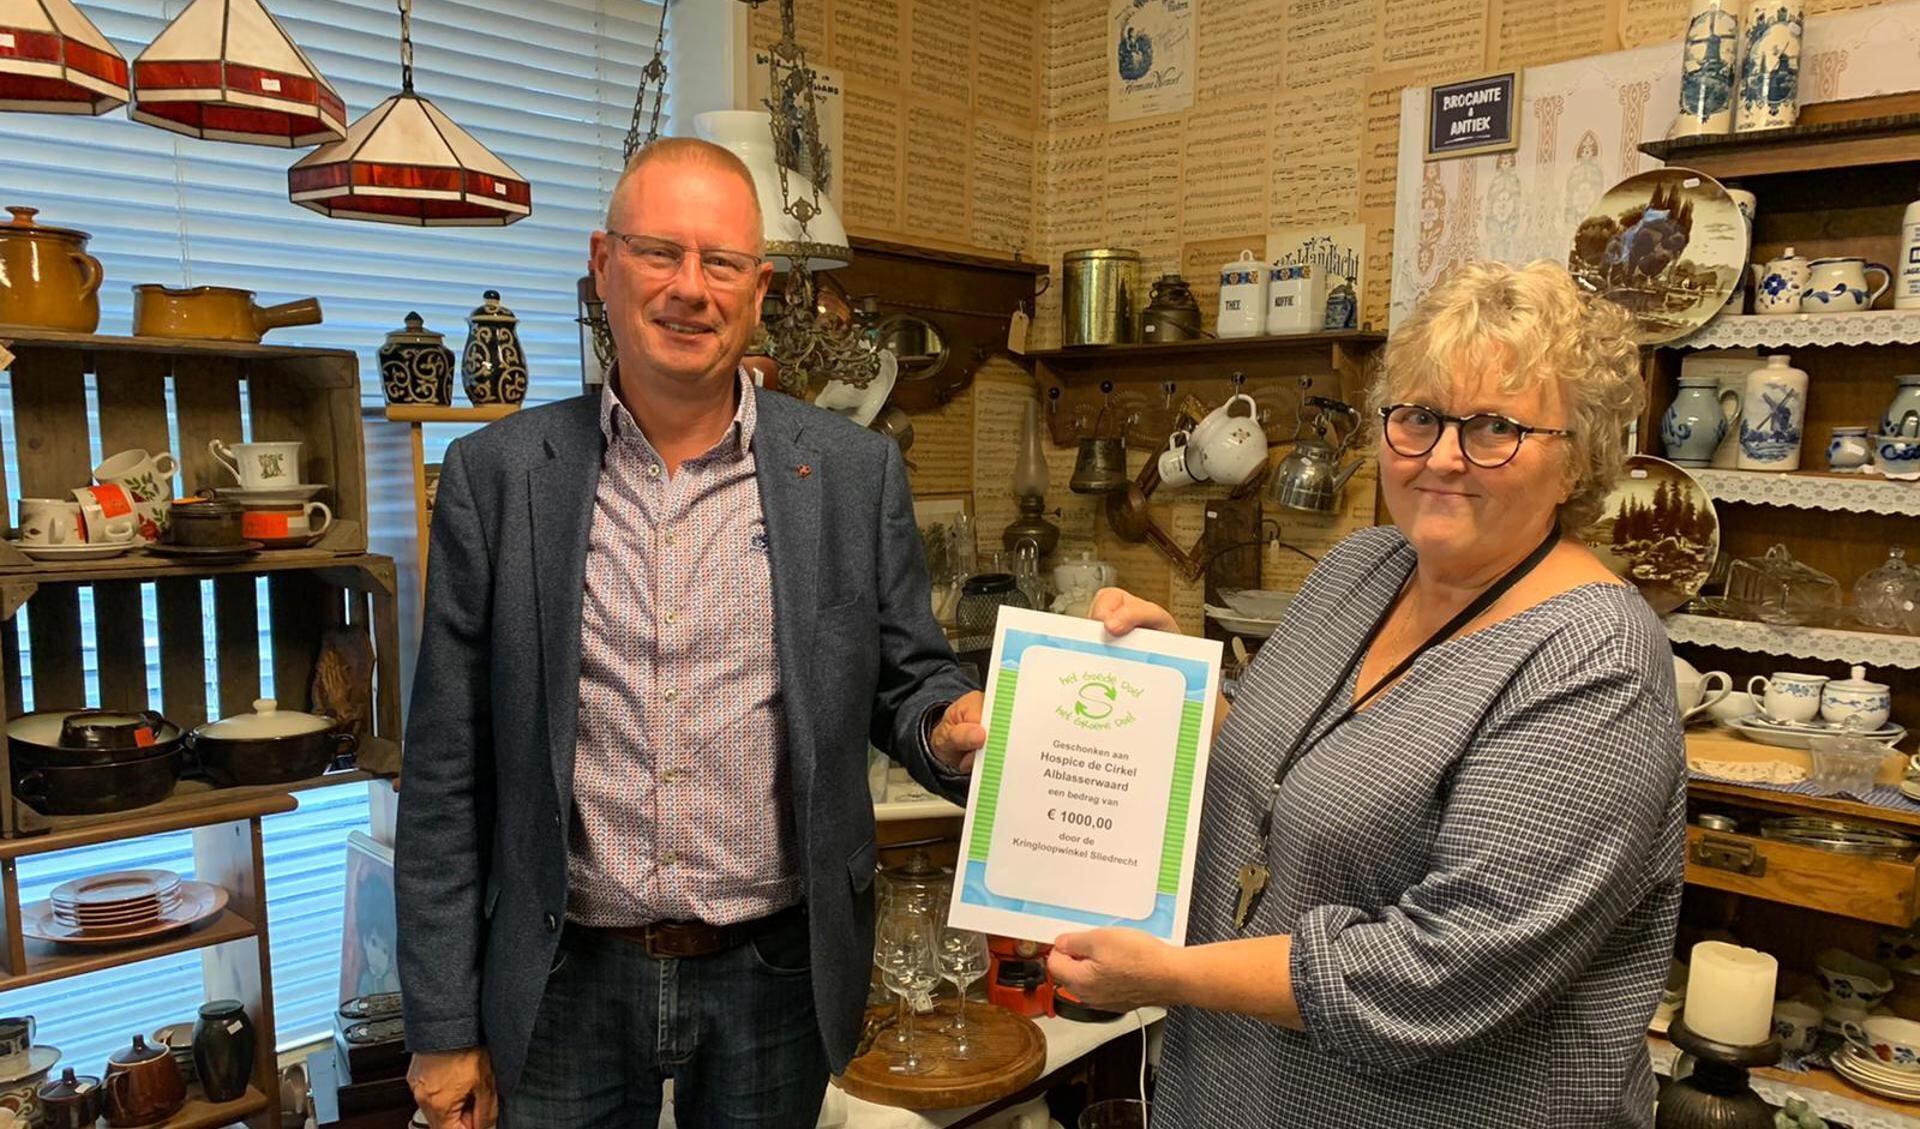 Uit handen van Bartha Visser (Kringloopwinkel Sliedrecht) ontvangt Nico van der Veen (Stichting vrienden van hospice De Cirkel) een cheque van 1000 euro.